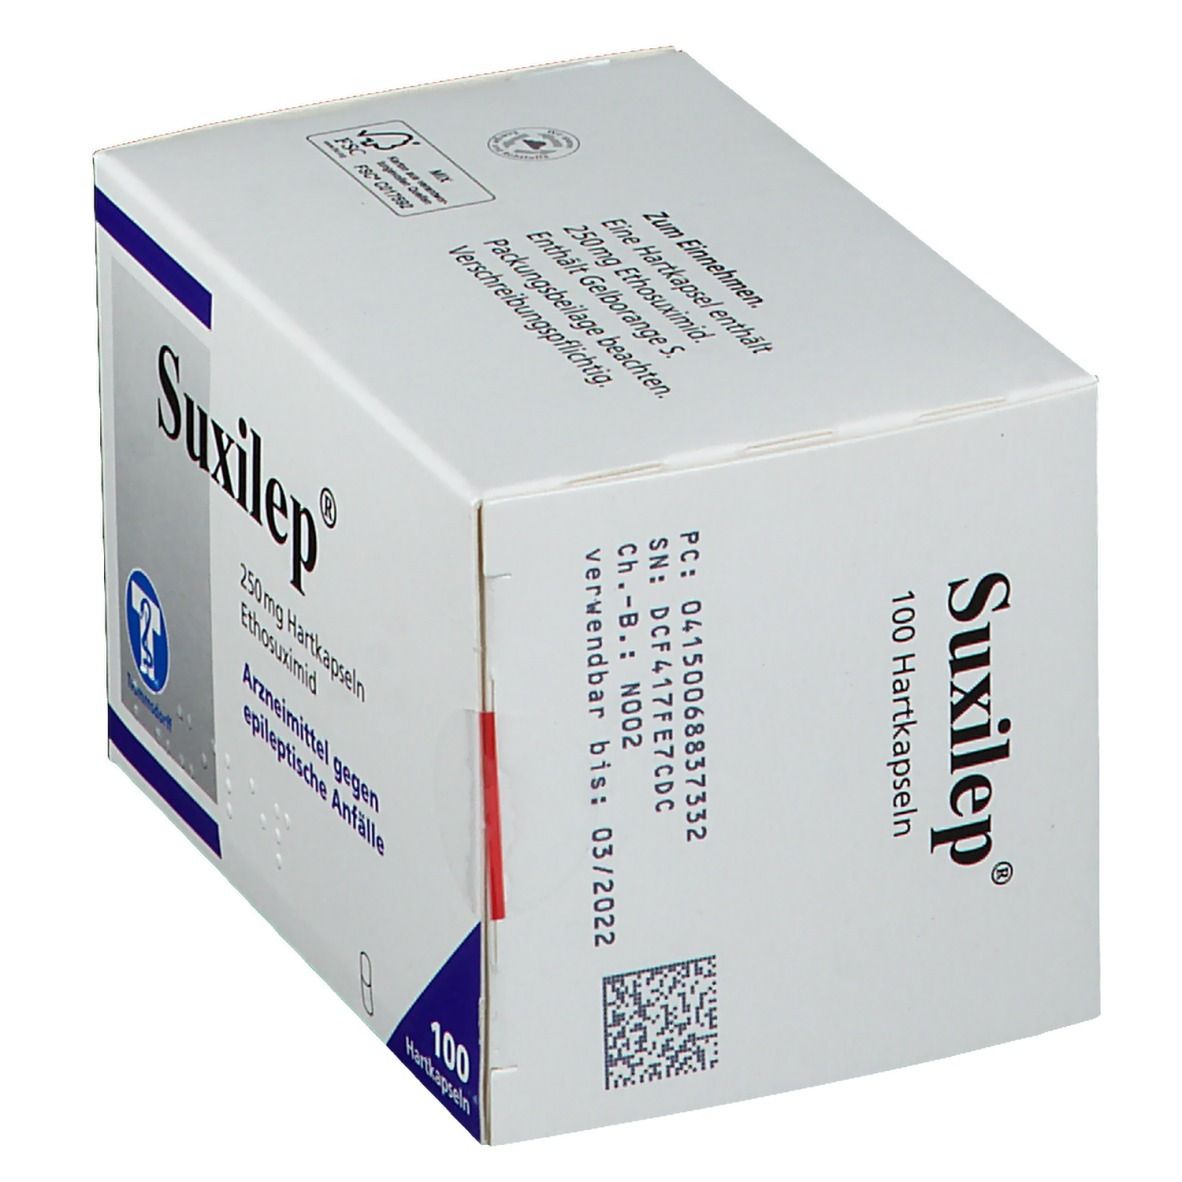 Suxilep® 250 mg